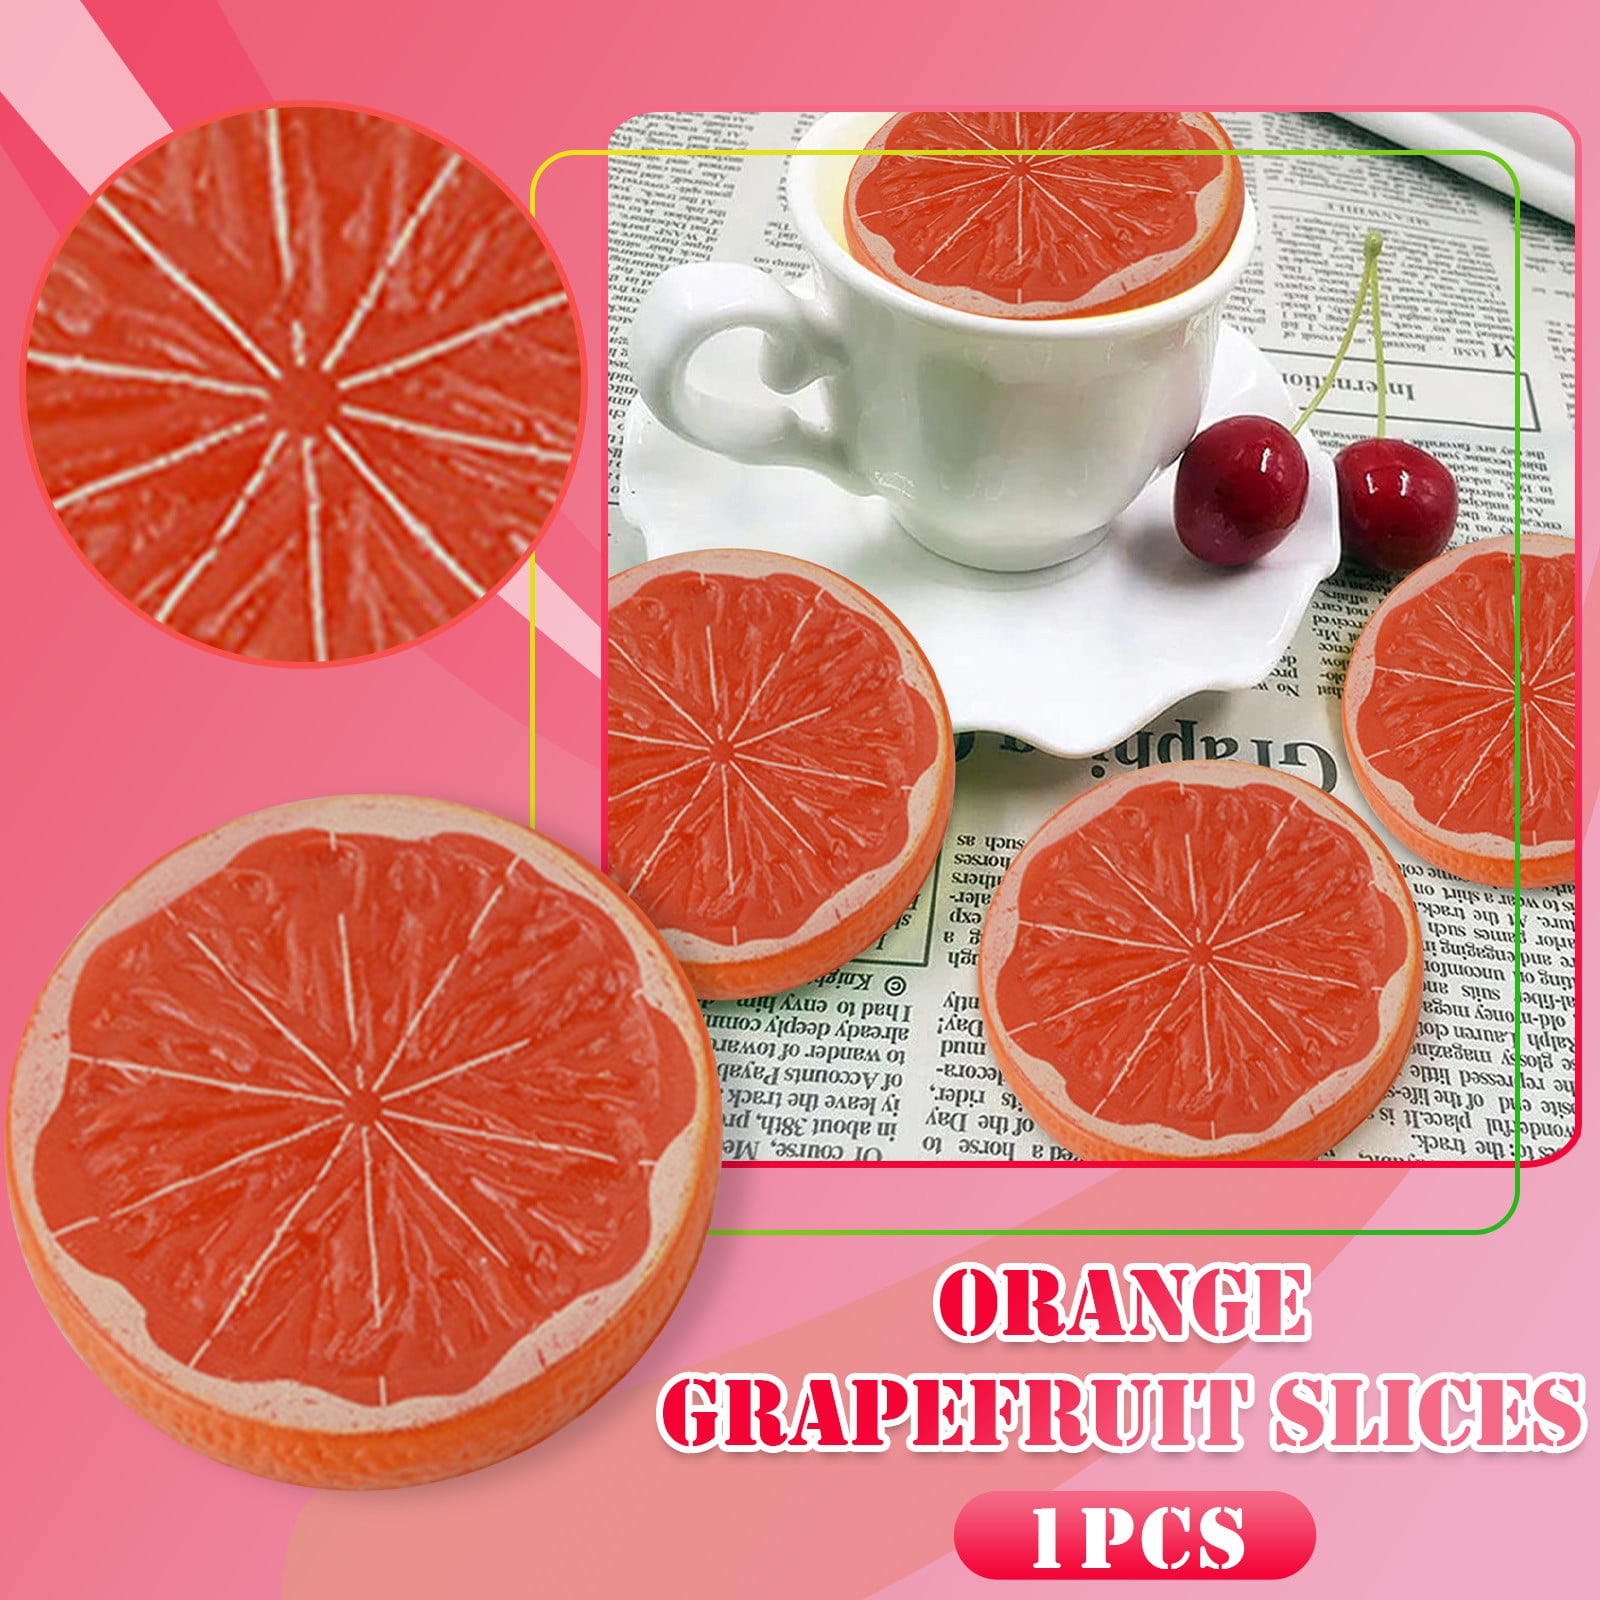 1pc Artificial Orange, Vivid Faux Fruit For Decoration, Home